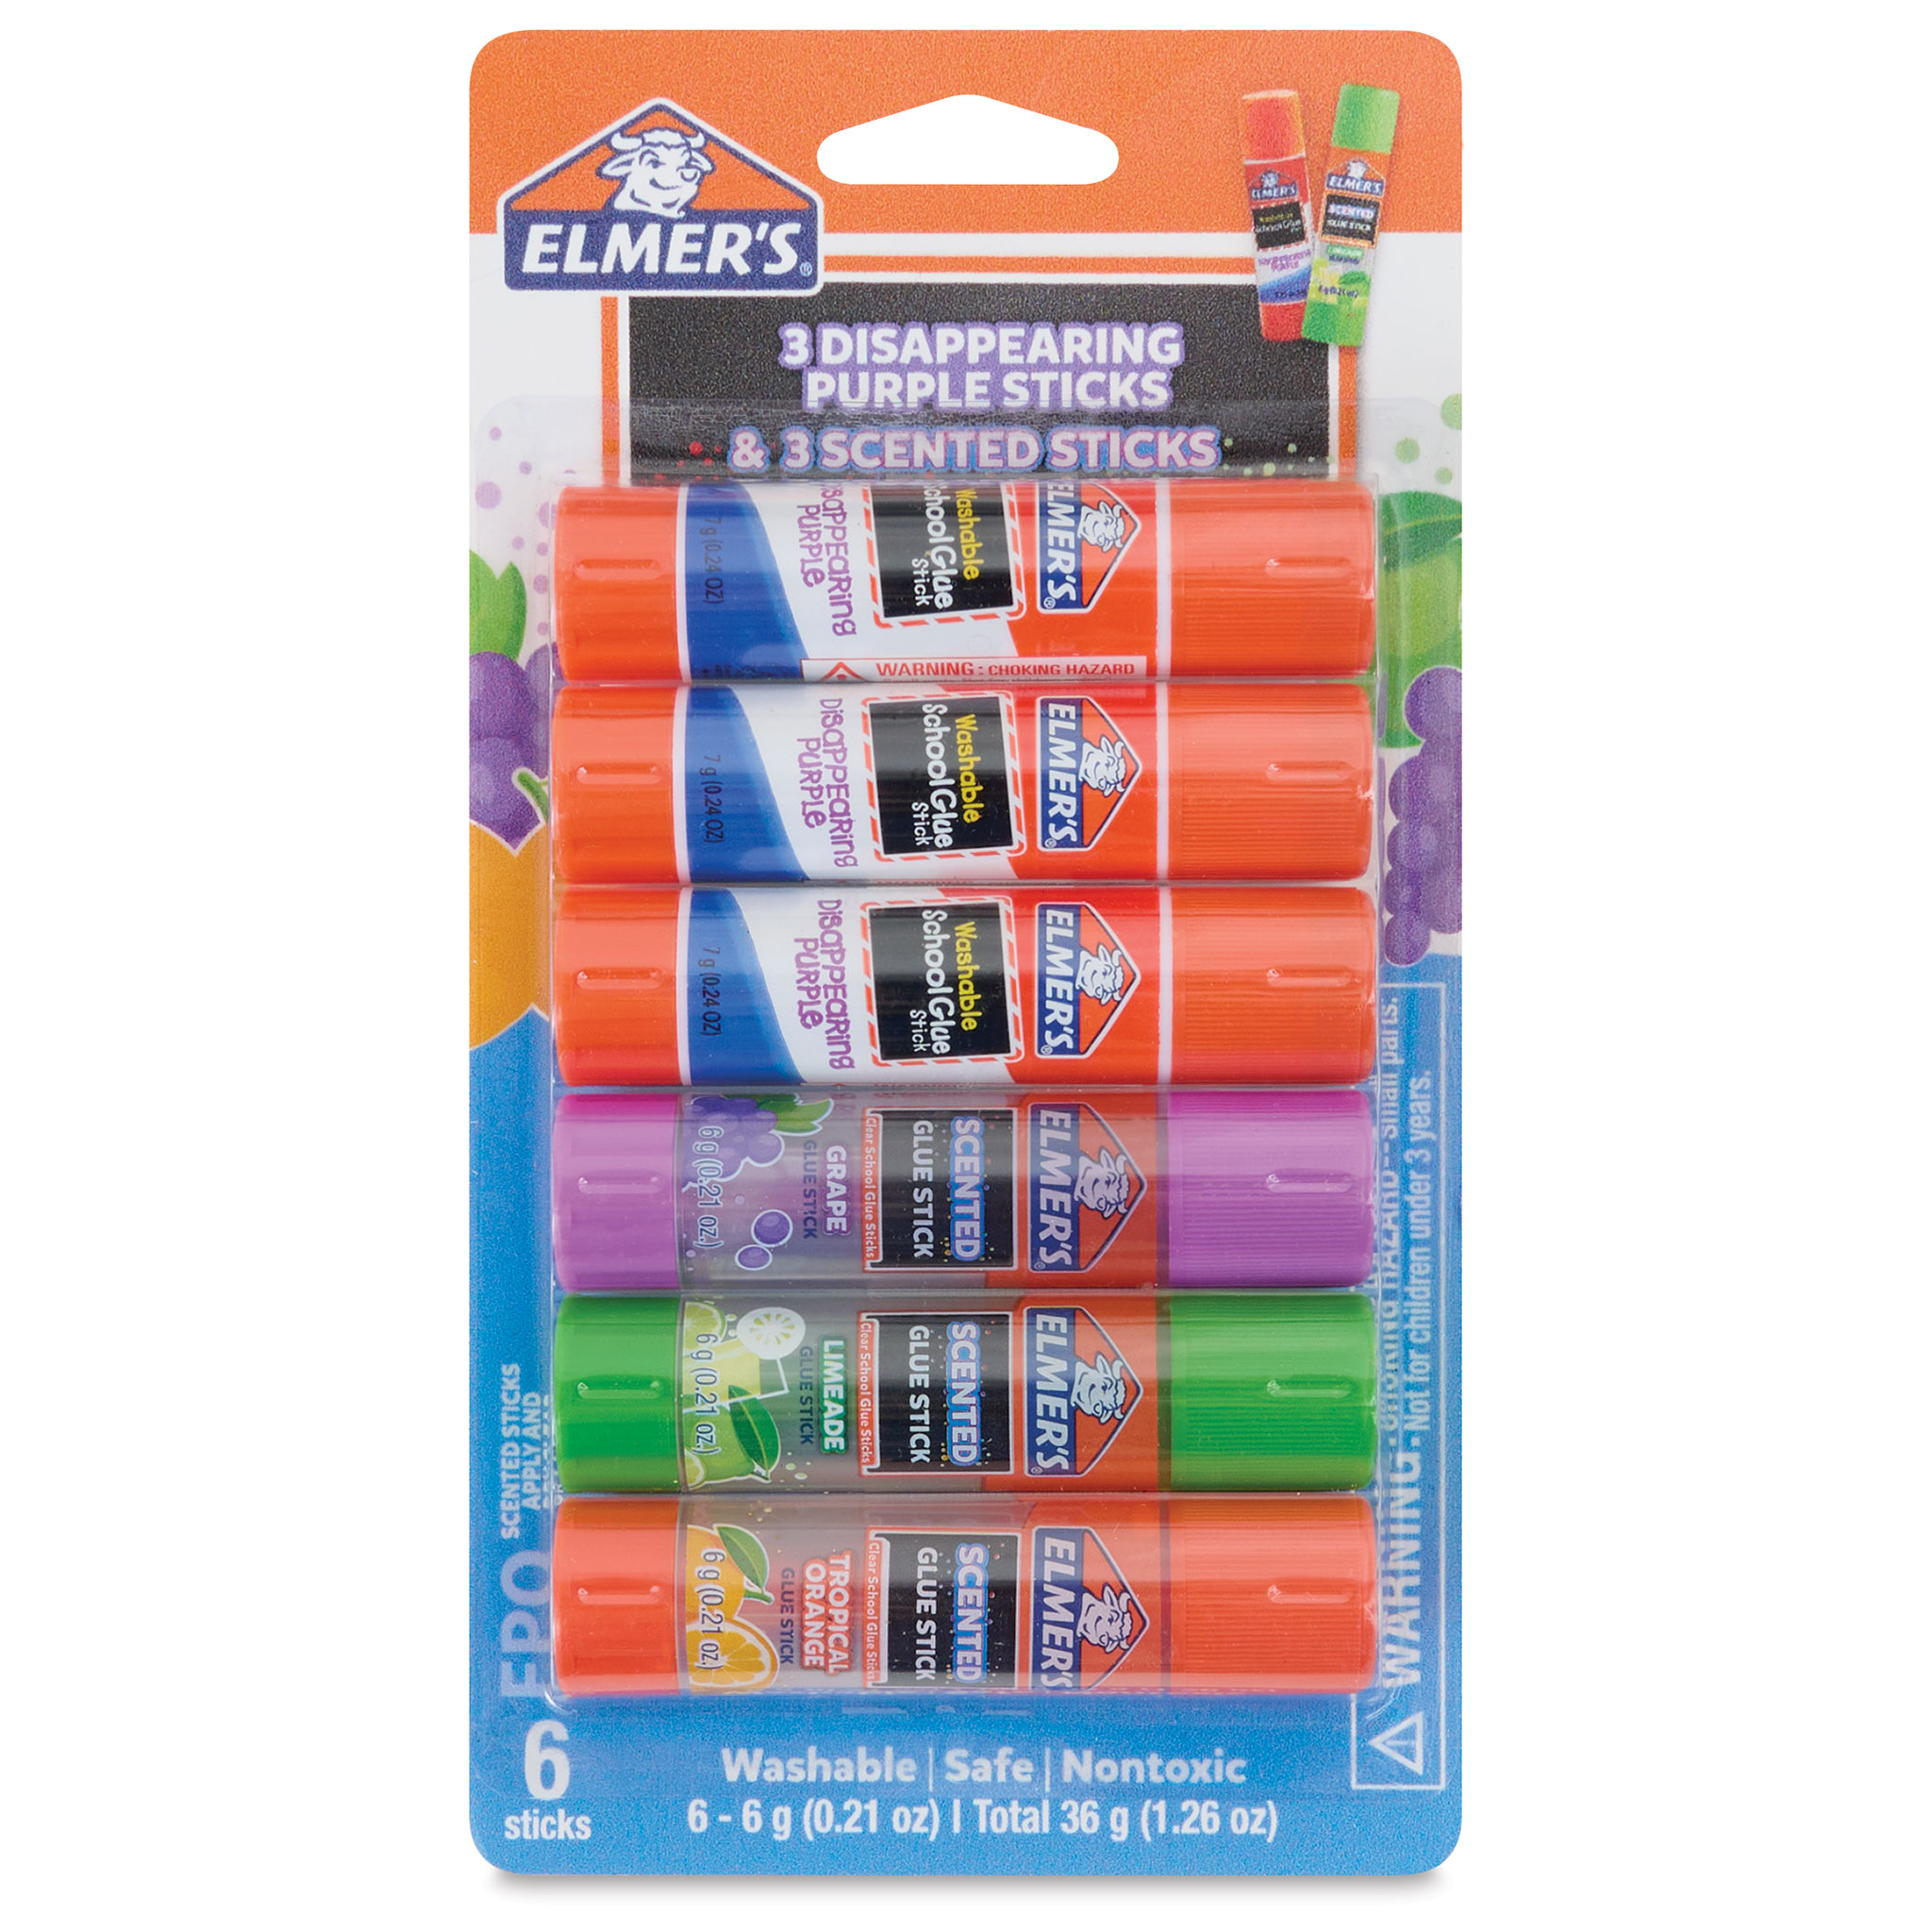 Elmer's® Scented Glue Sticks